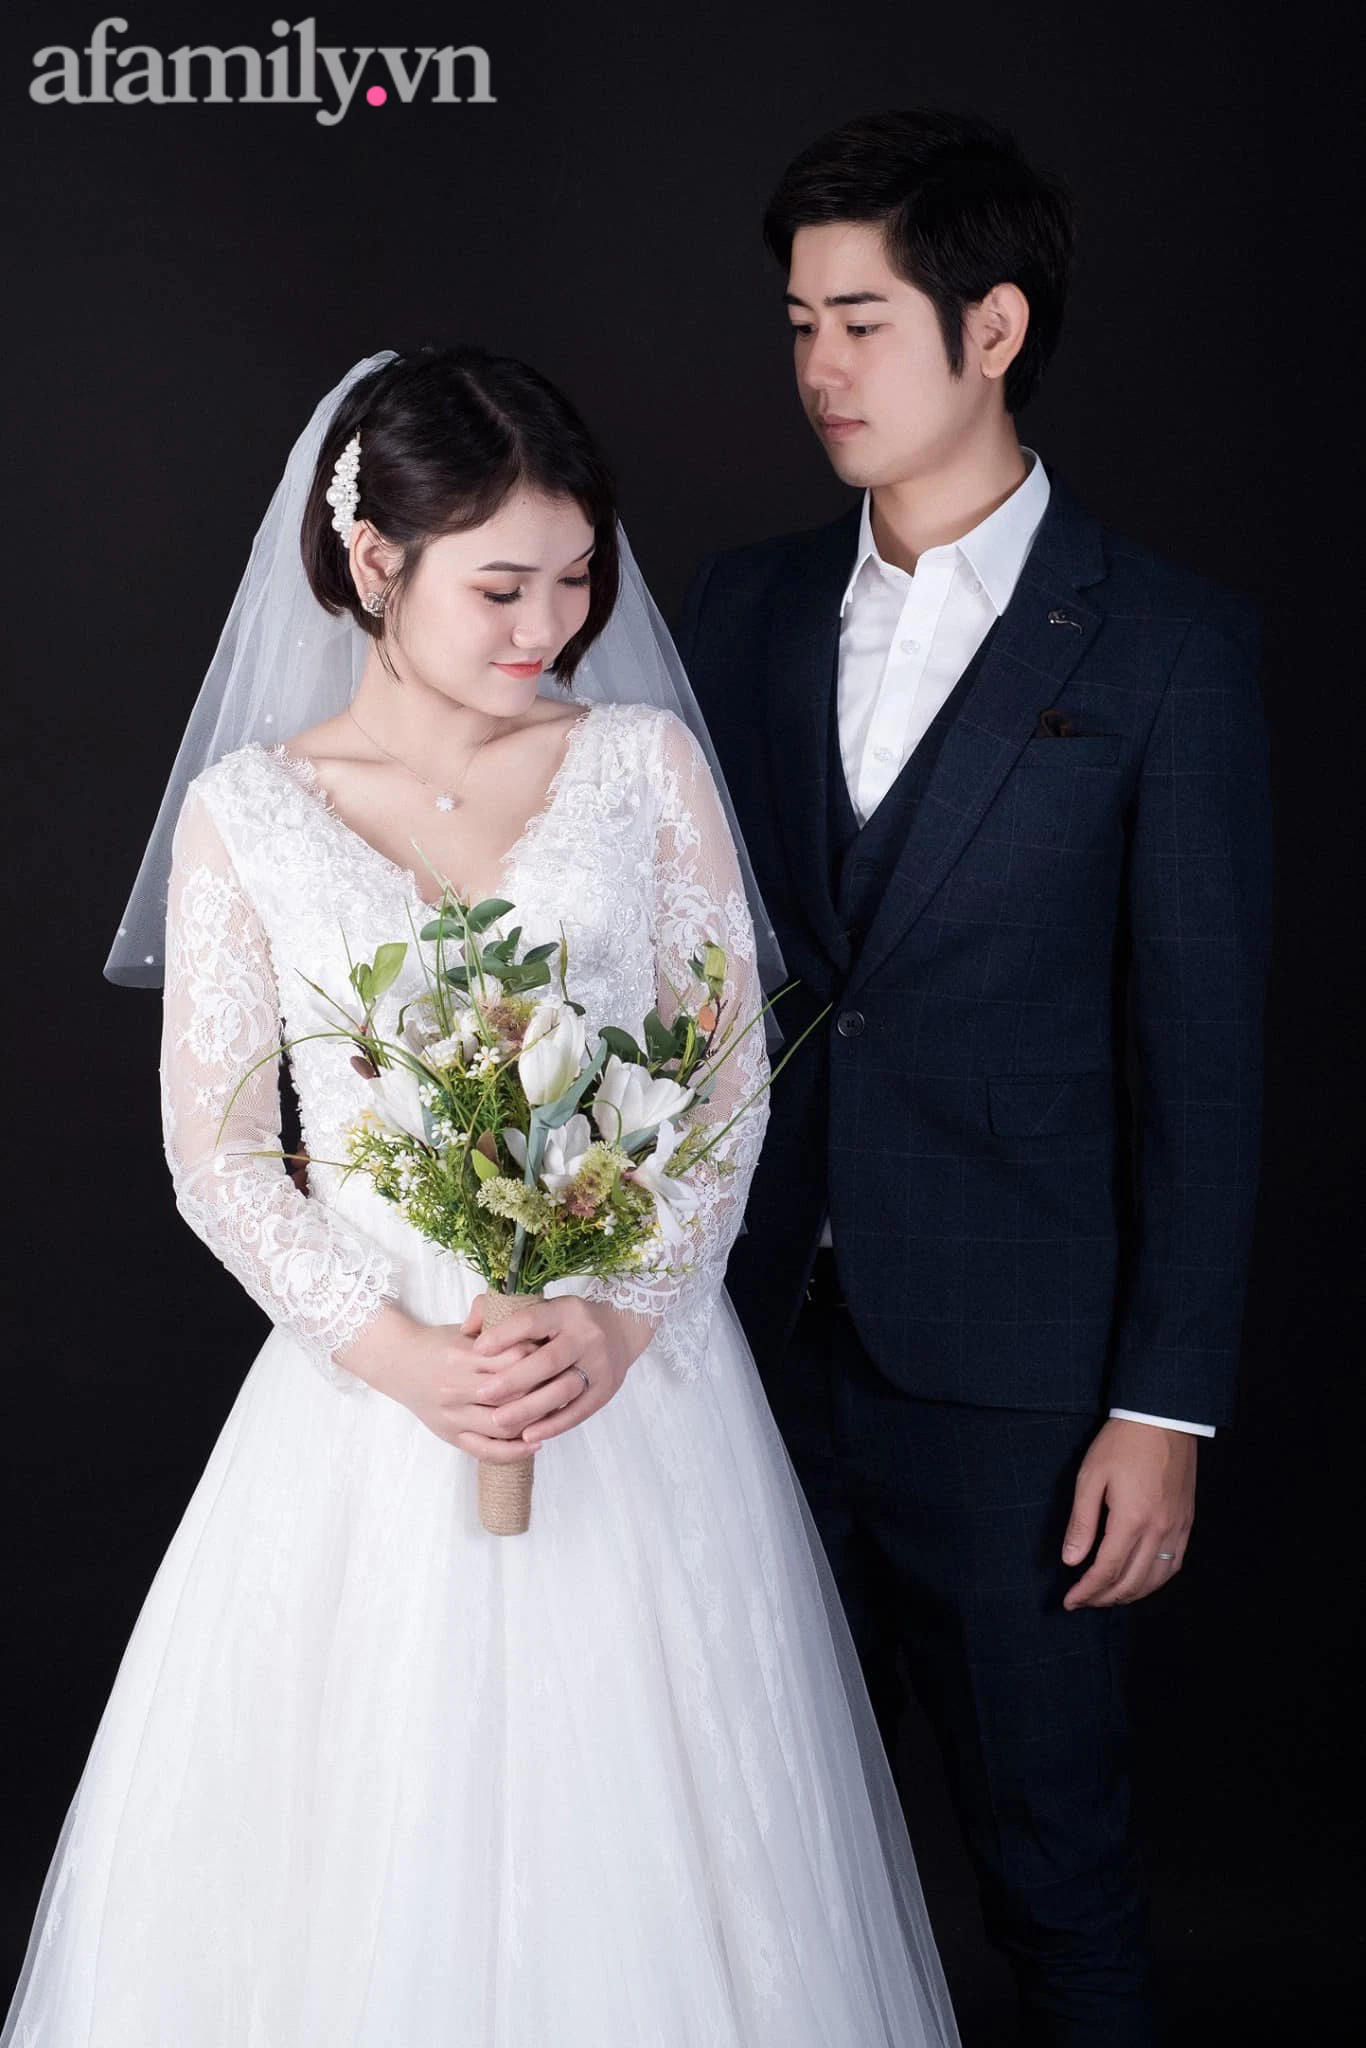 Quyết định lấy chồng Nhật, cô gái Gia Lai nhận được lời cảnh báo từ bố: 